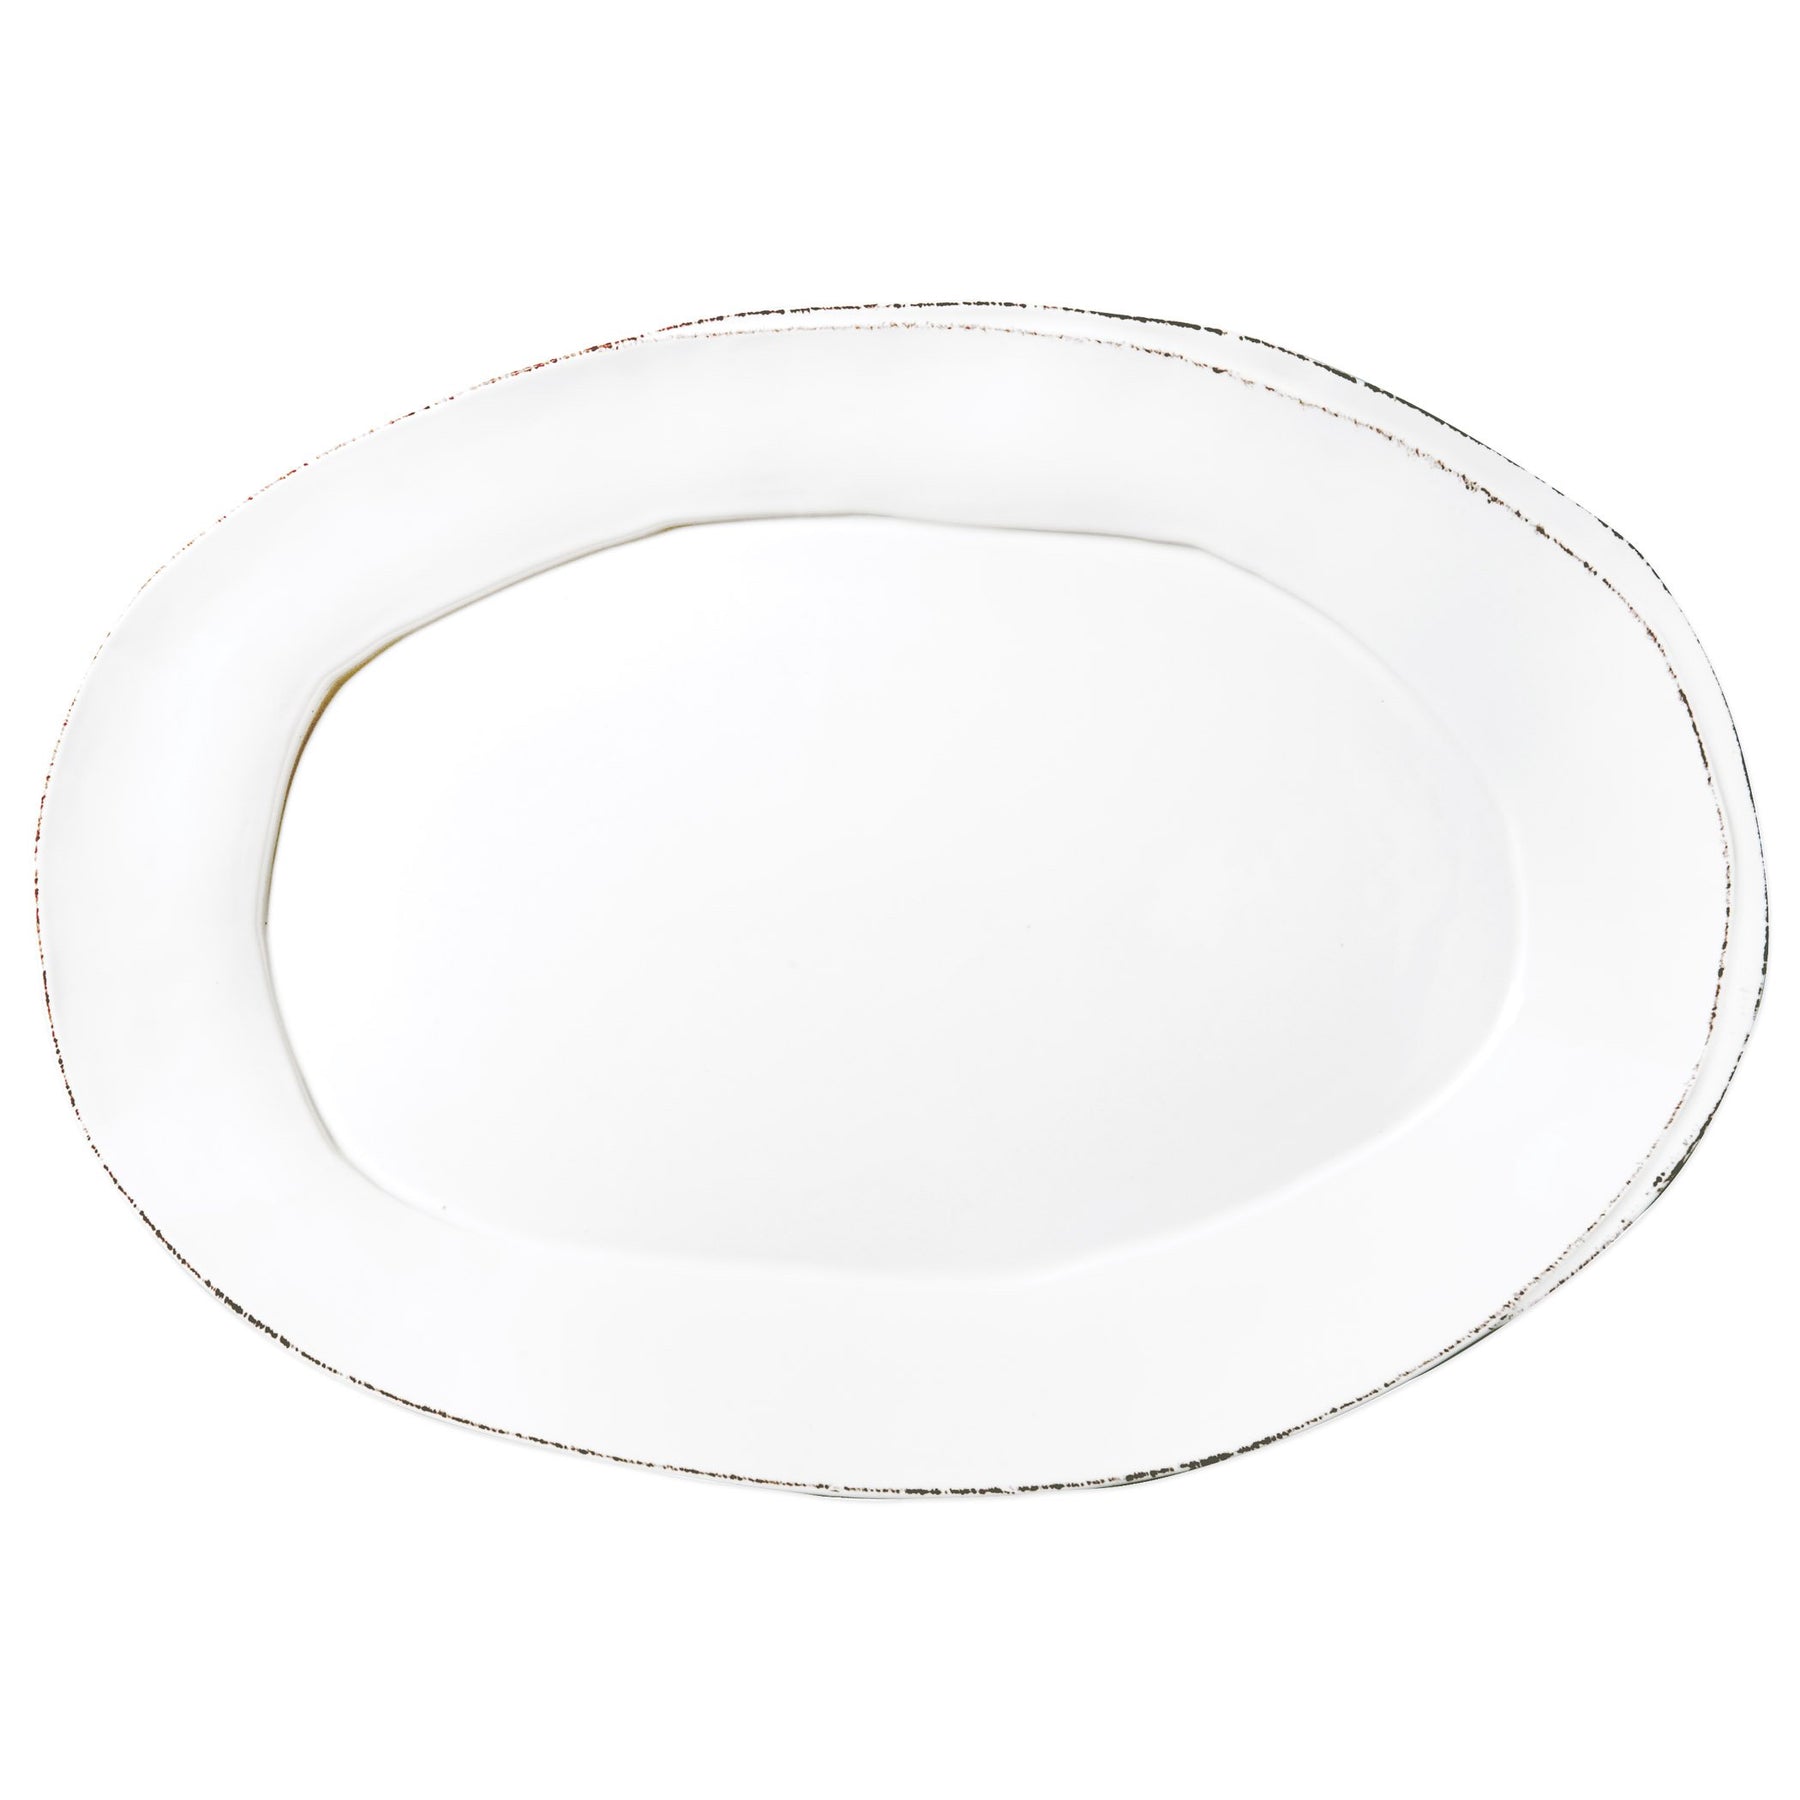 Vietri Lastra White Oval Platter